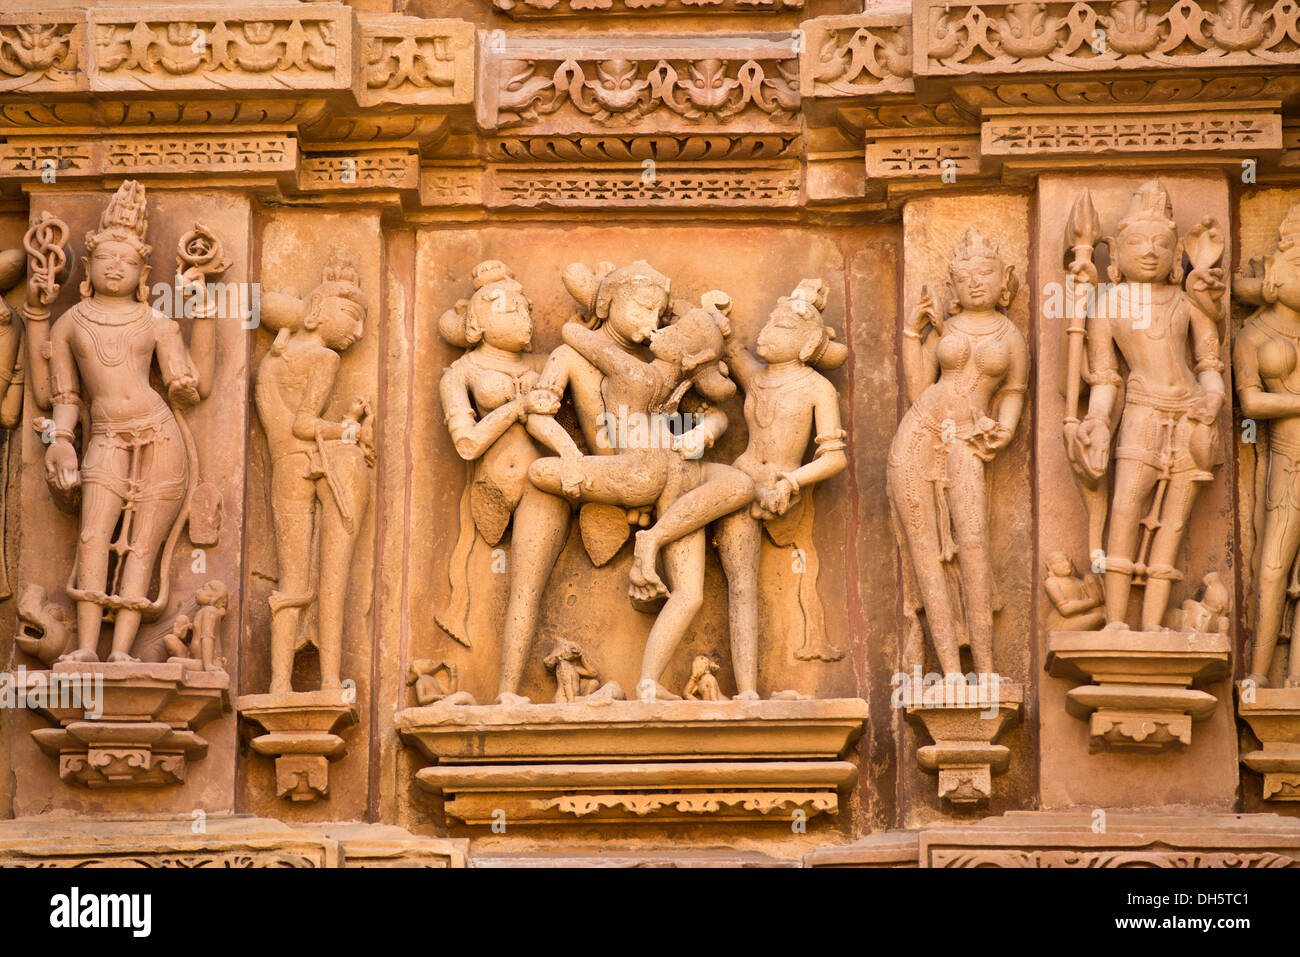 Sculture in rilievo di uomini, erotico scene, sulla facciata del Kandariya Mahadeva temple, Khajuraho Gruppo di Monumenti Foto Stock